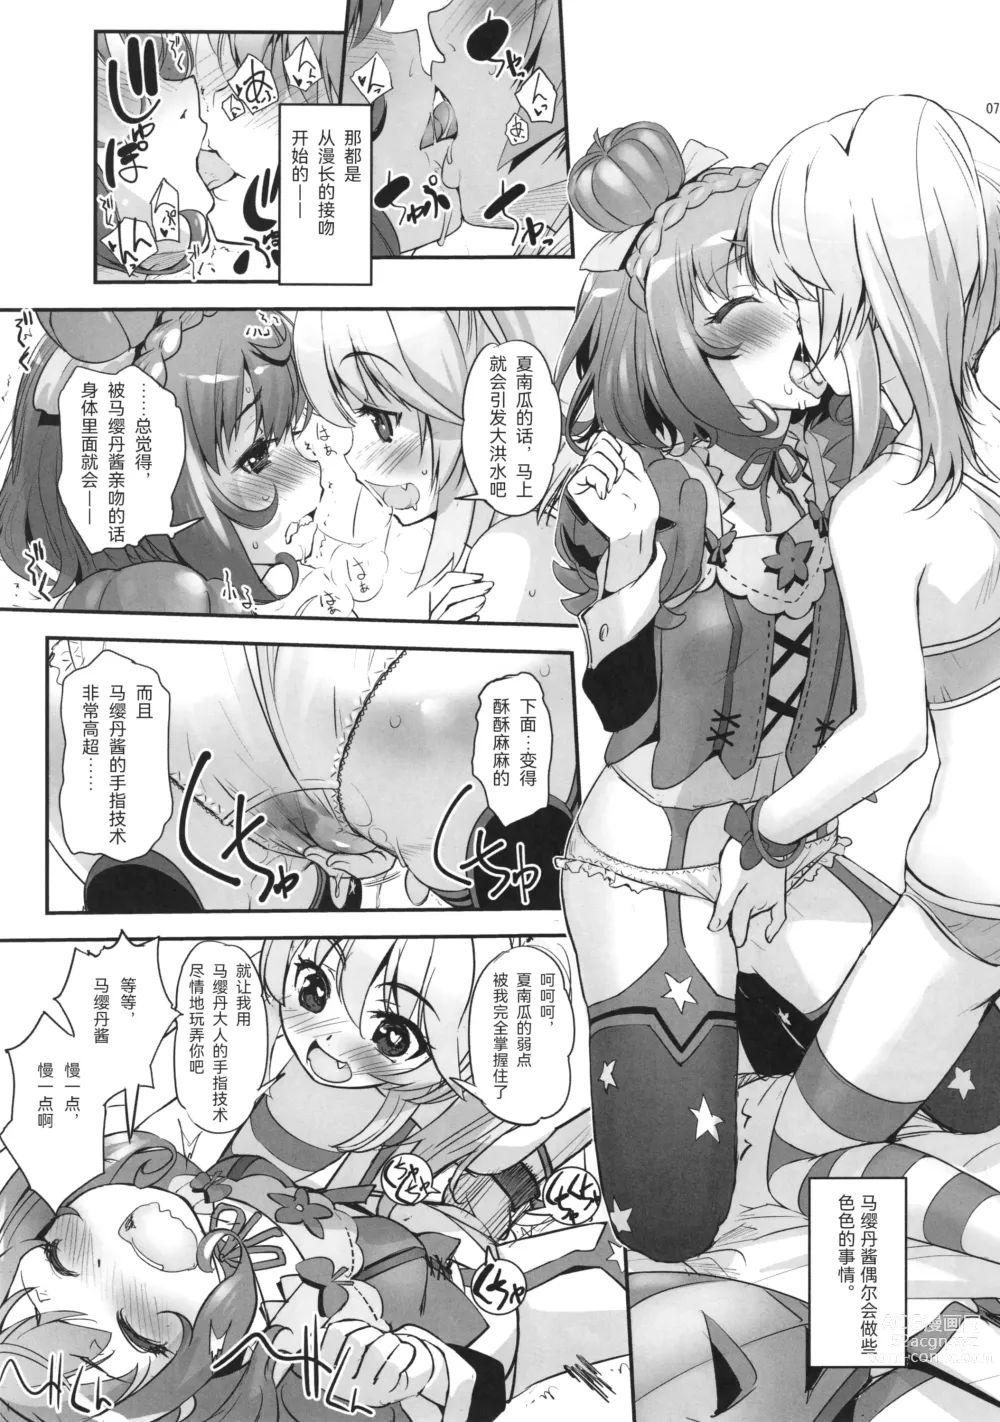 Page 7 of doujinshi Hana Kishi Engi 1.5